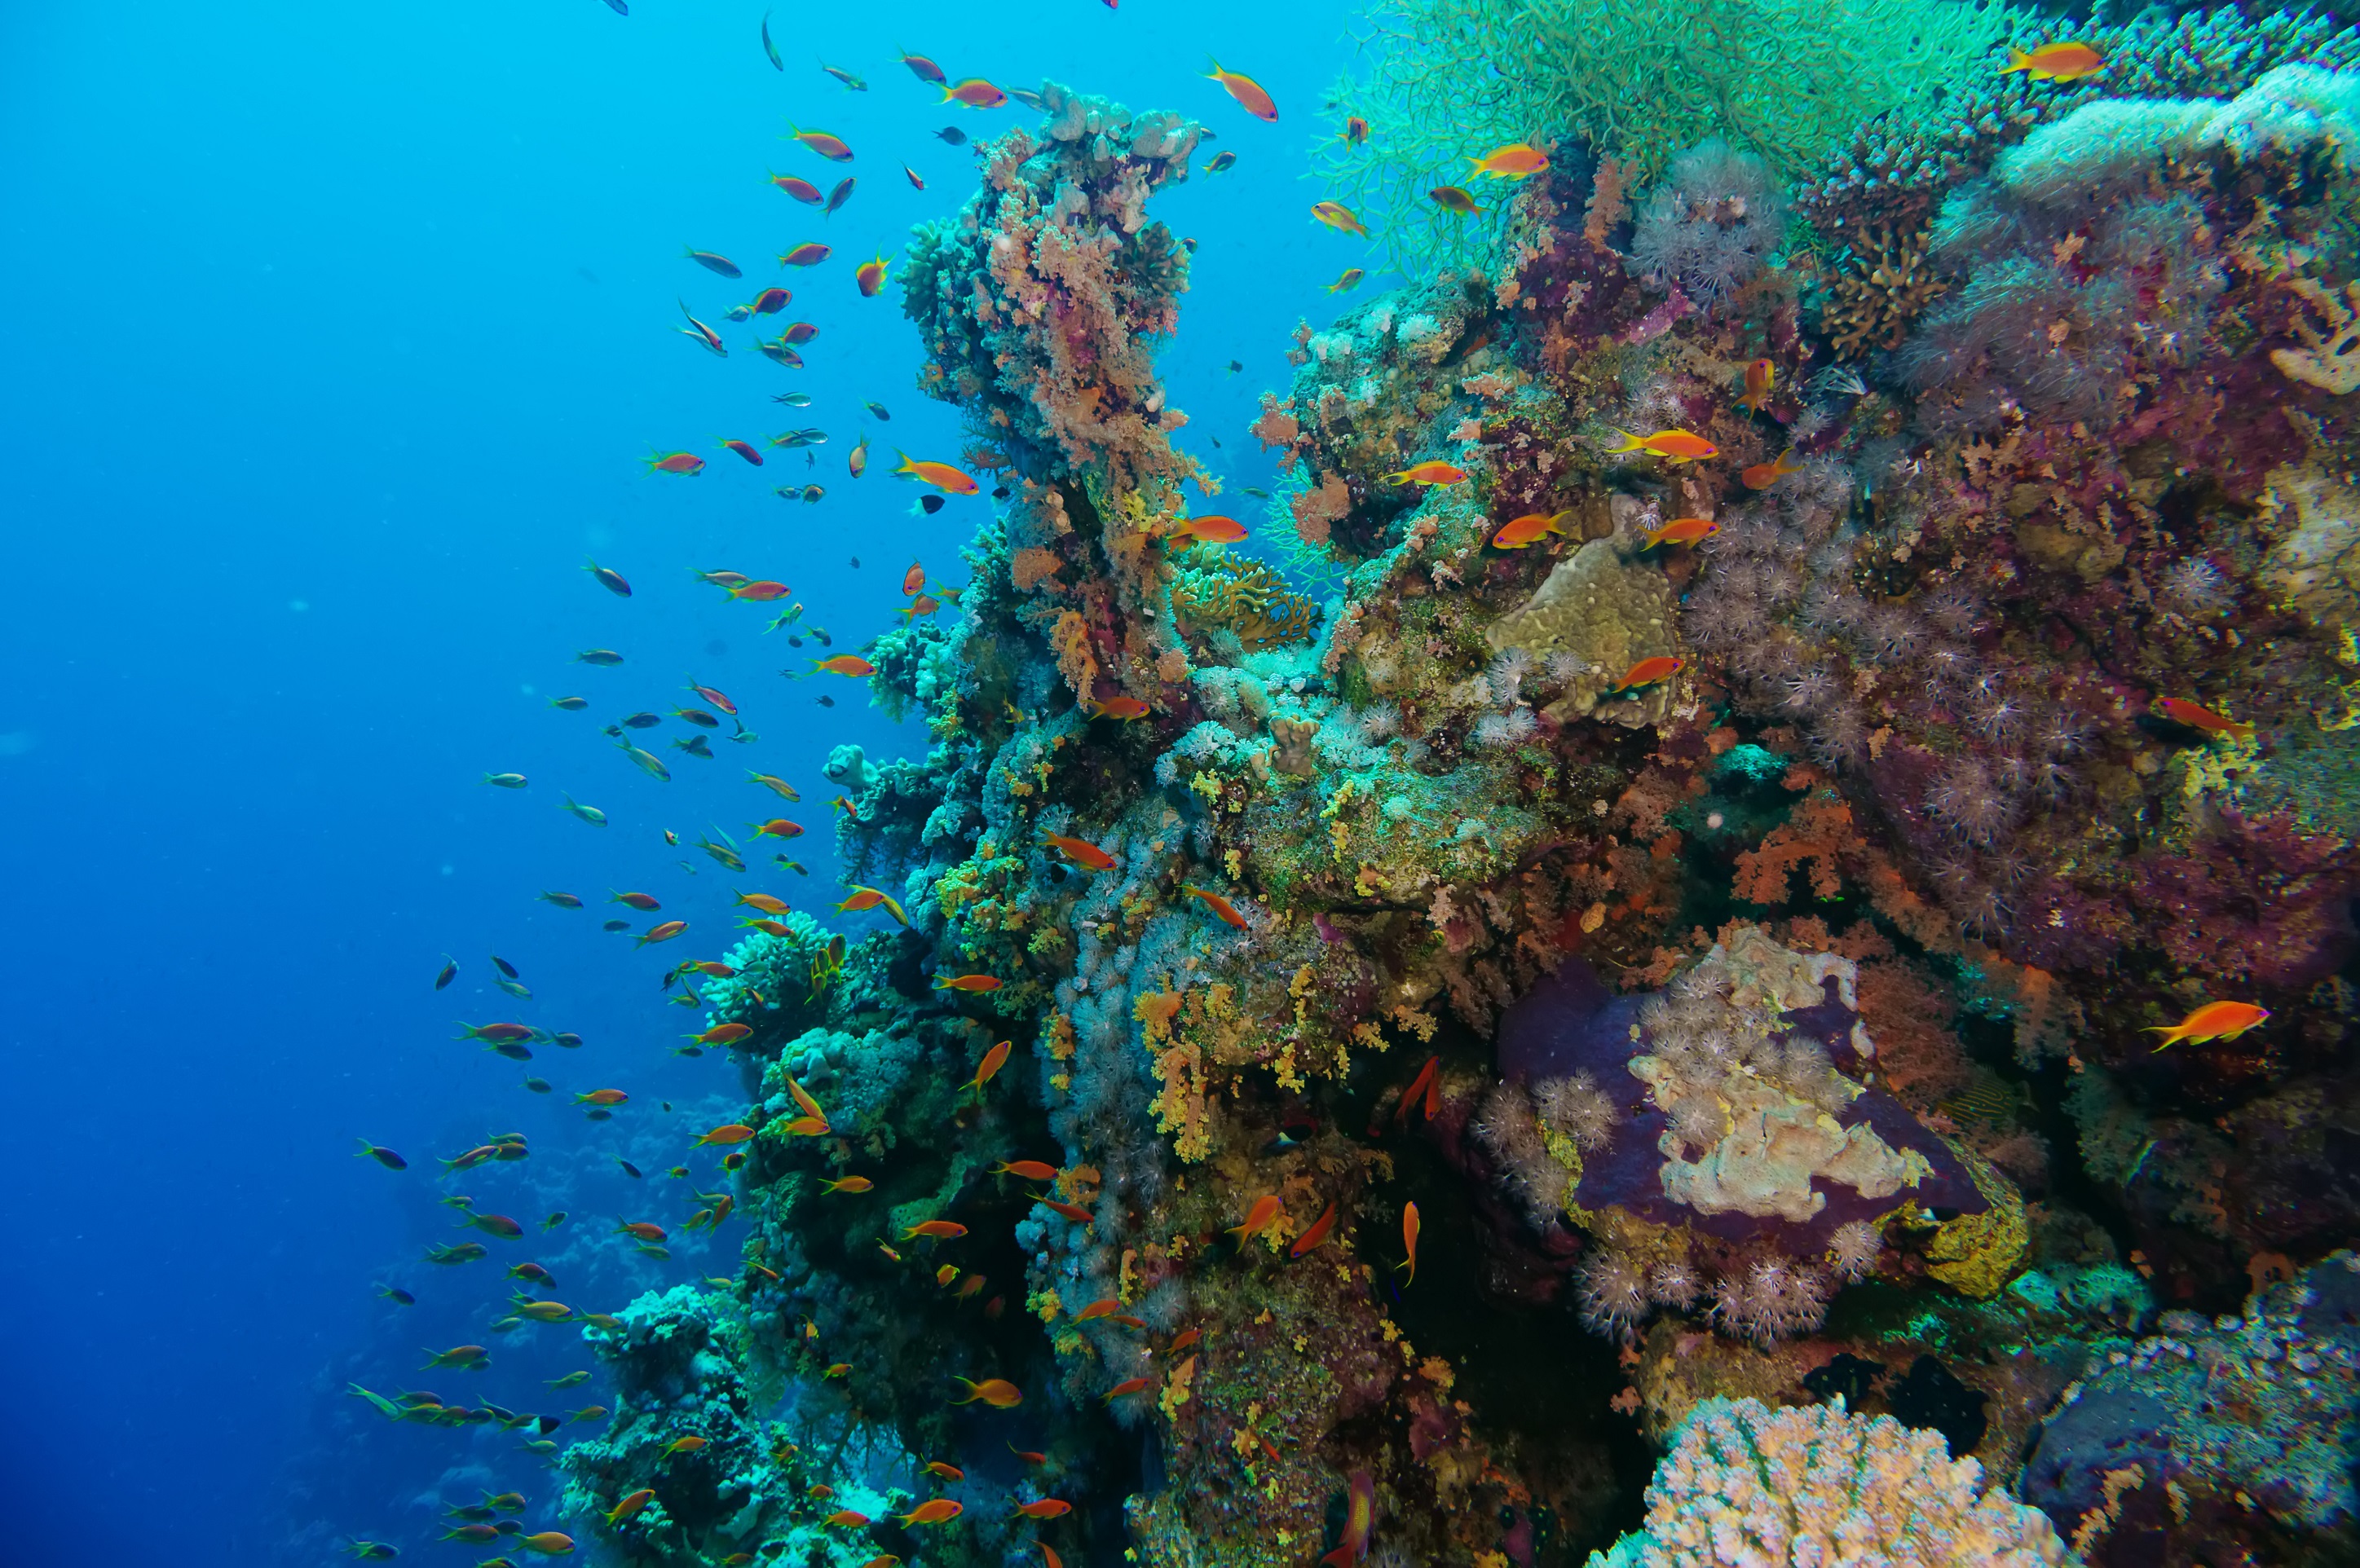 Comment la valse des continents a favorisé l’éclosion de la biodiversité marine. © Lotus_studio, Shutterstock